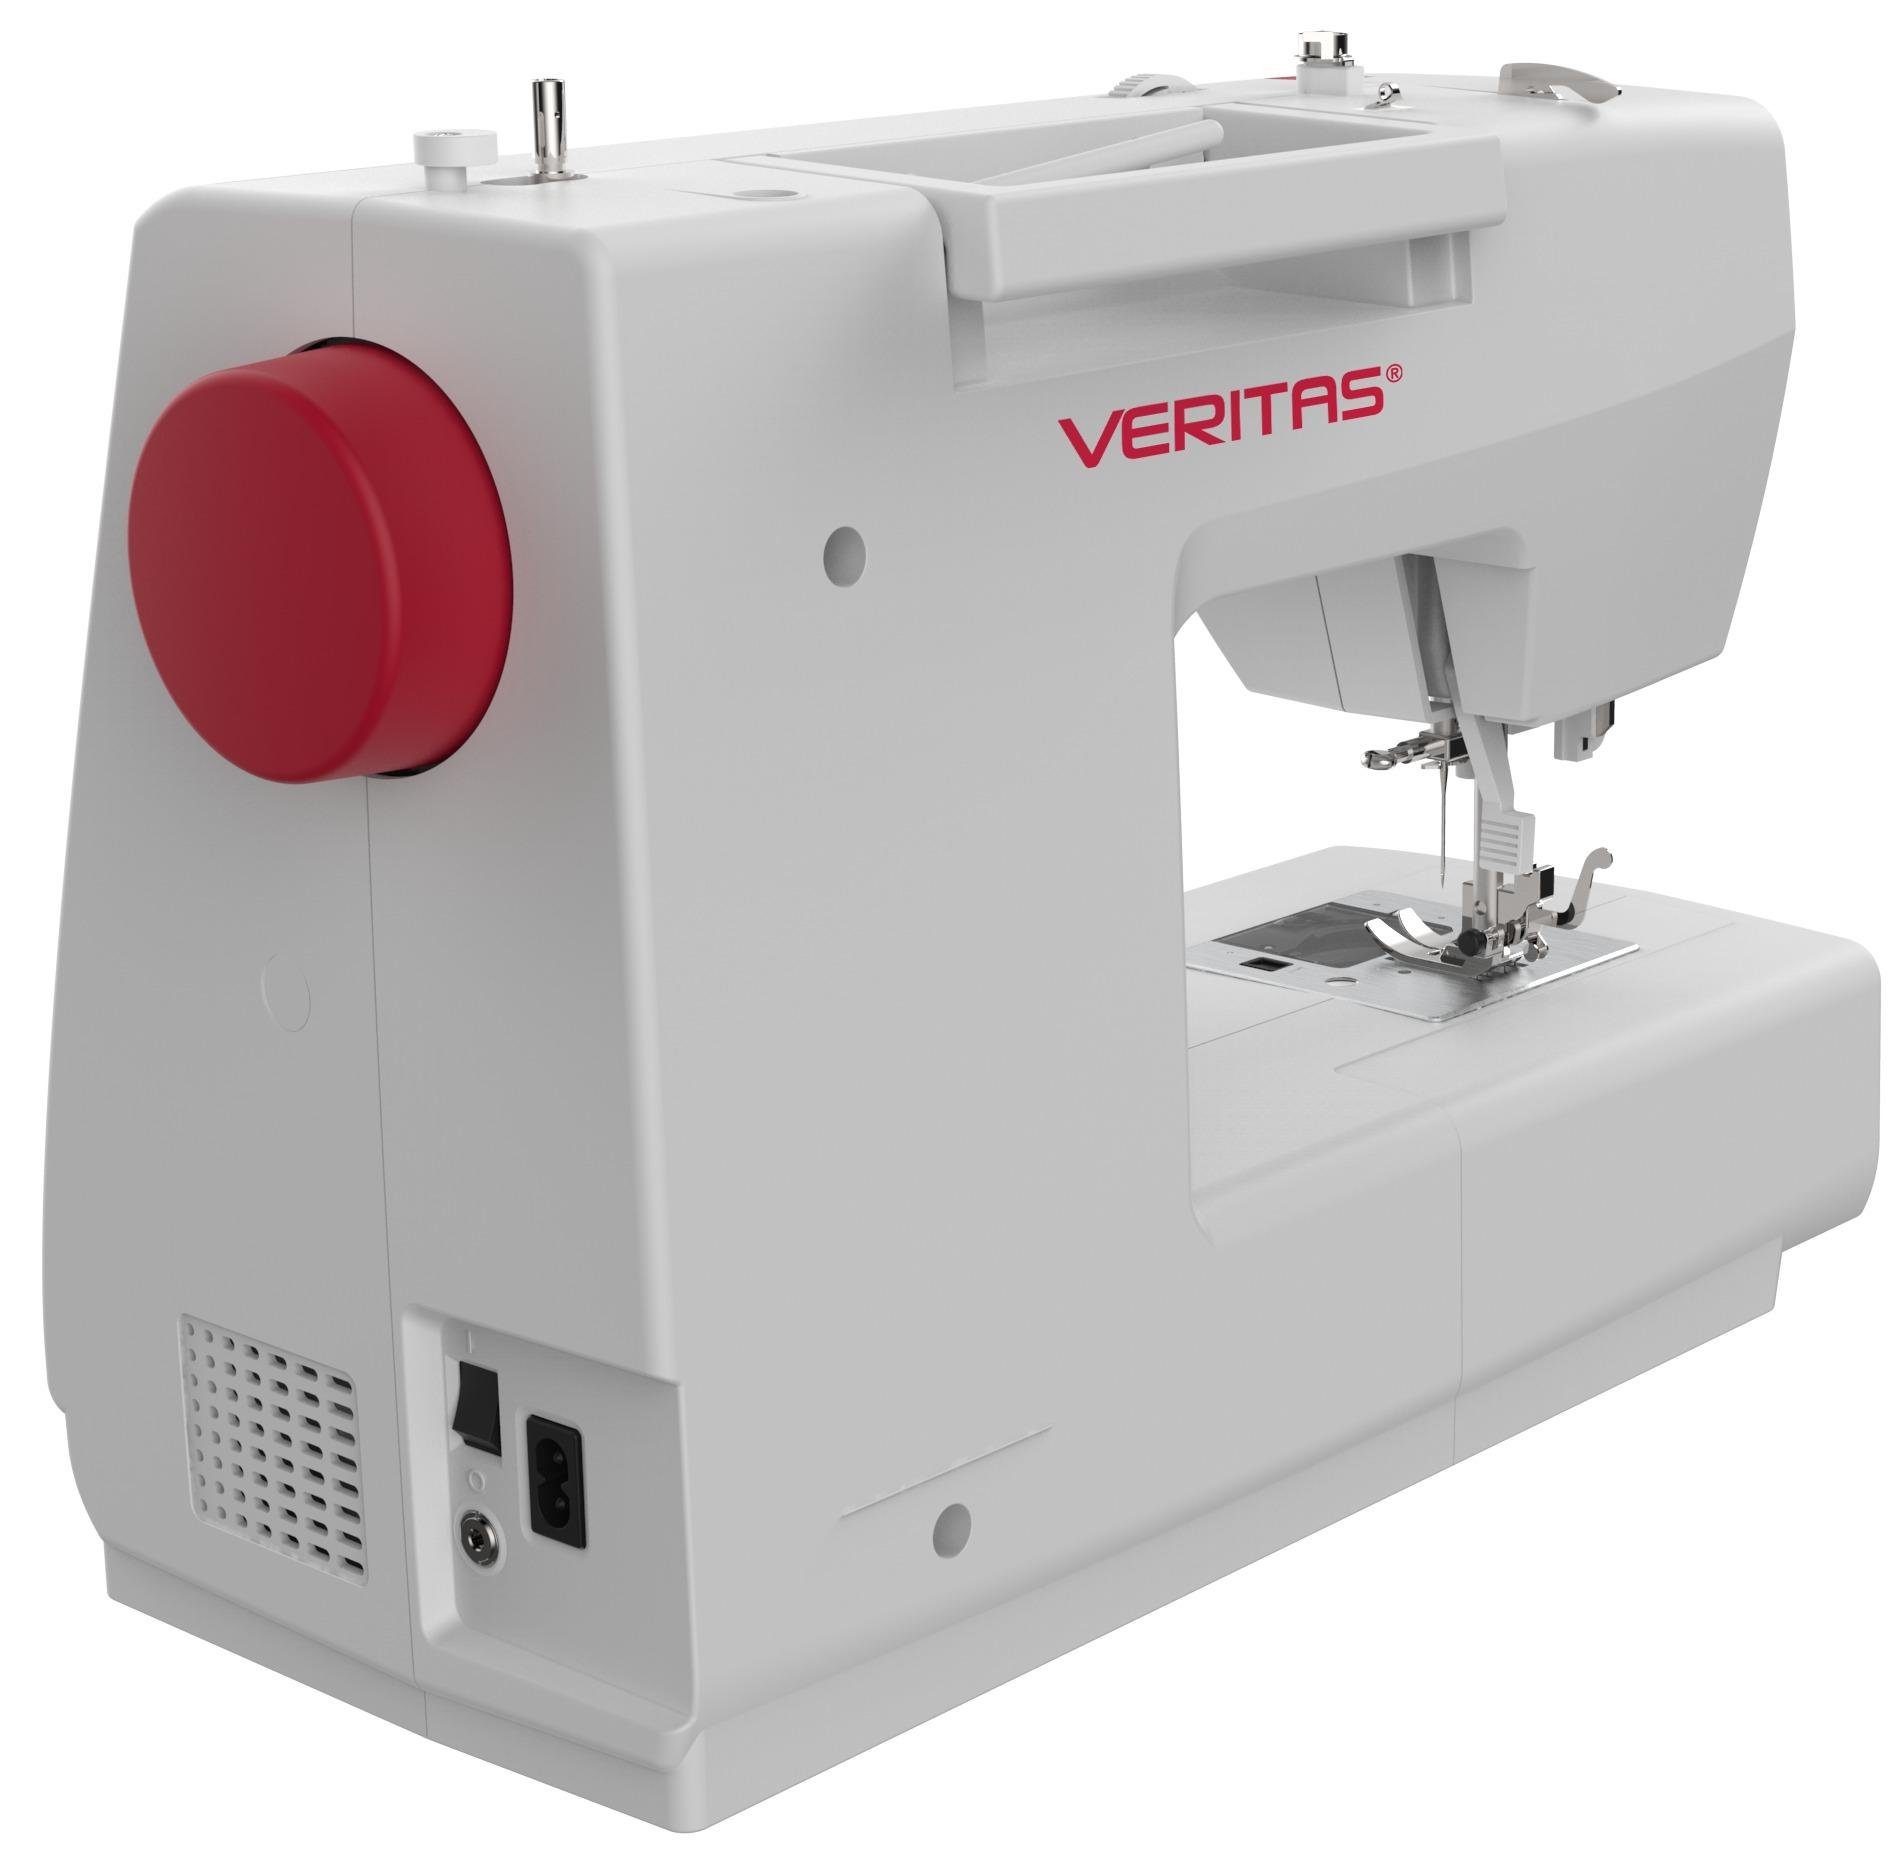 Veritas computergesteuert, 80 Nähmaschine 80 verschiedene Programme, EMILY, Stiche Nähmaschine